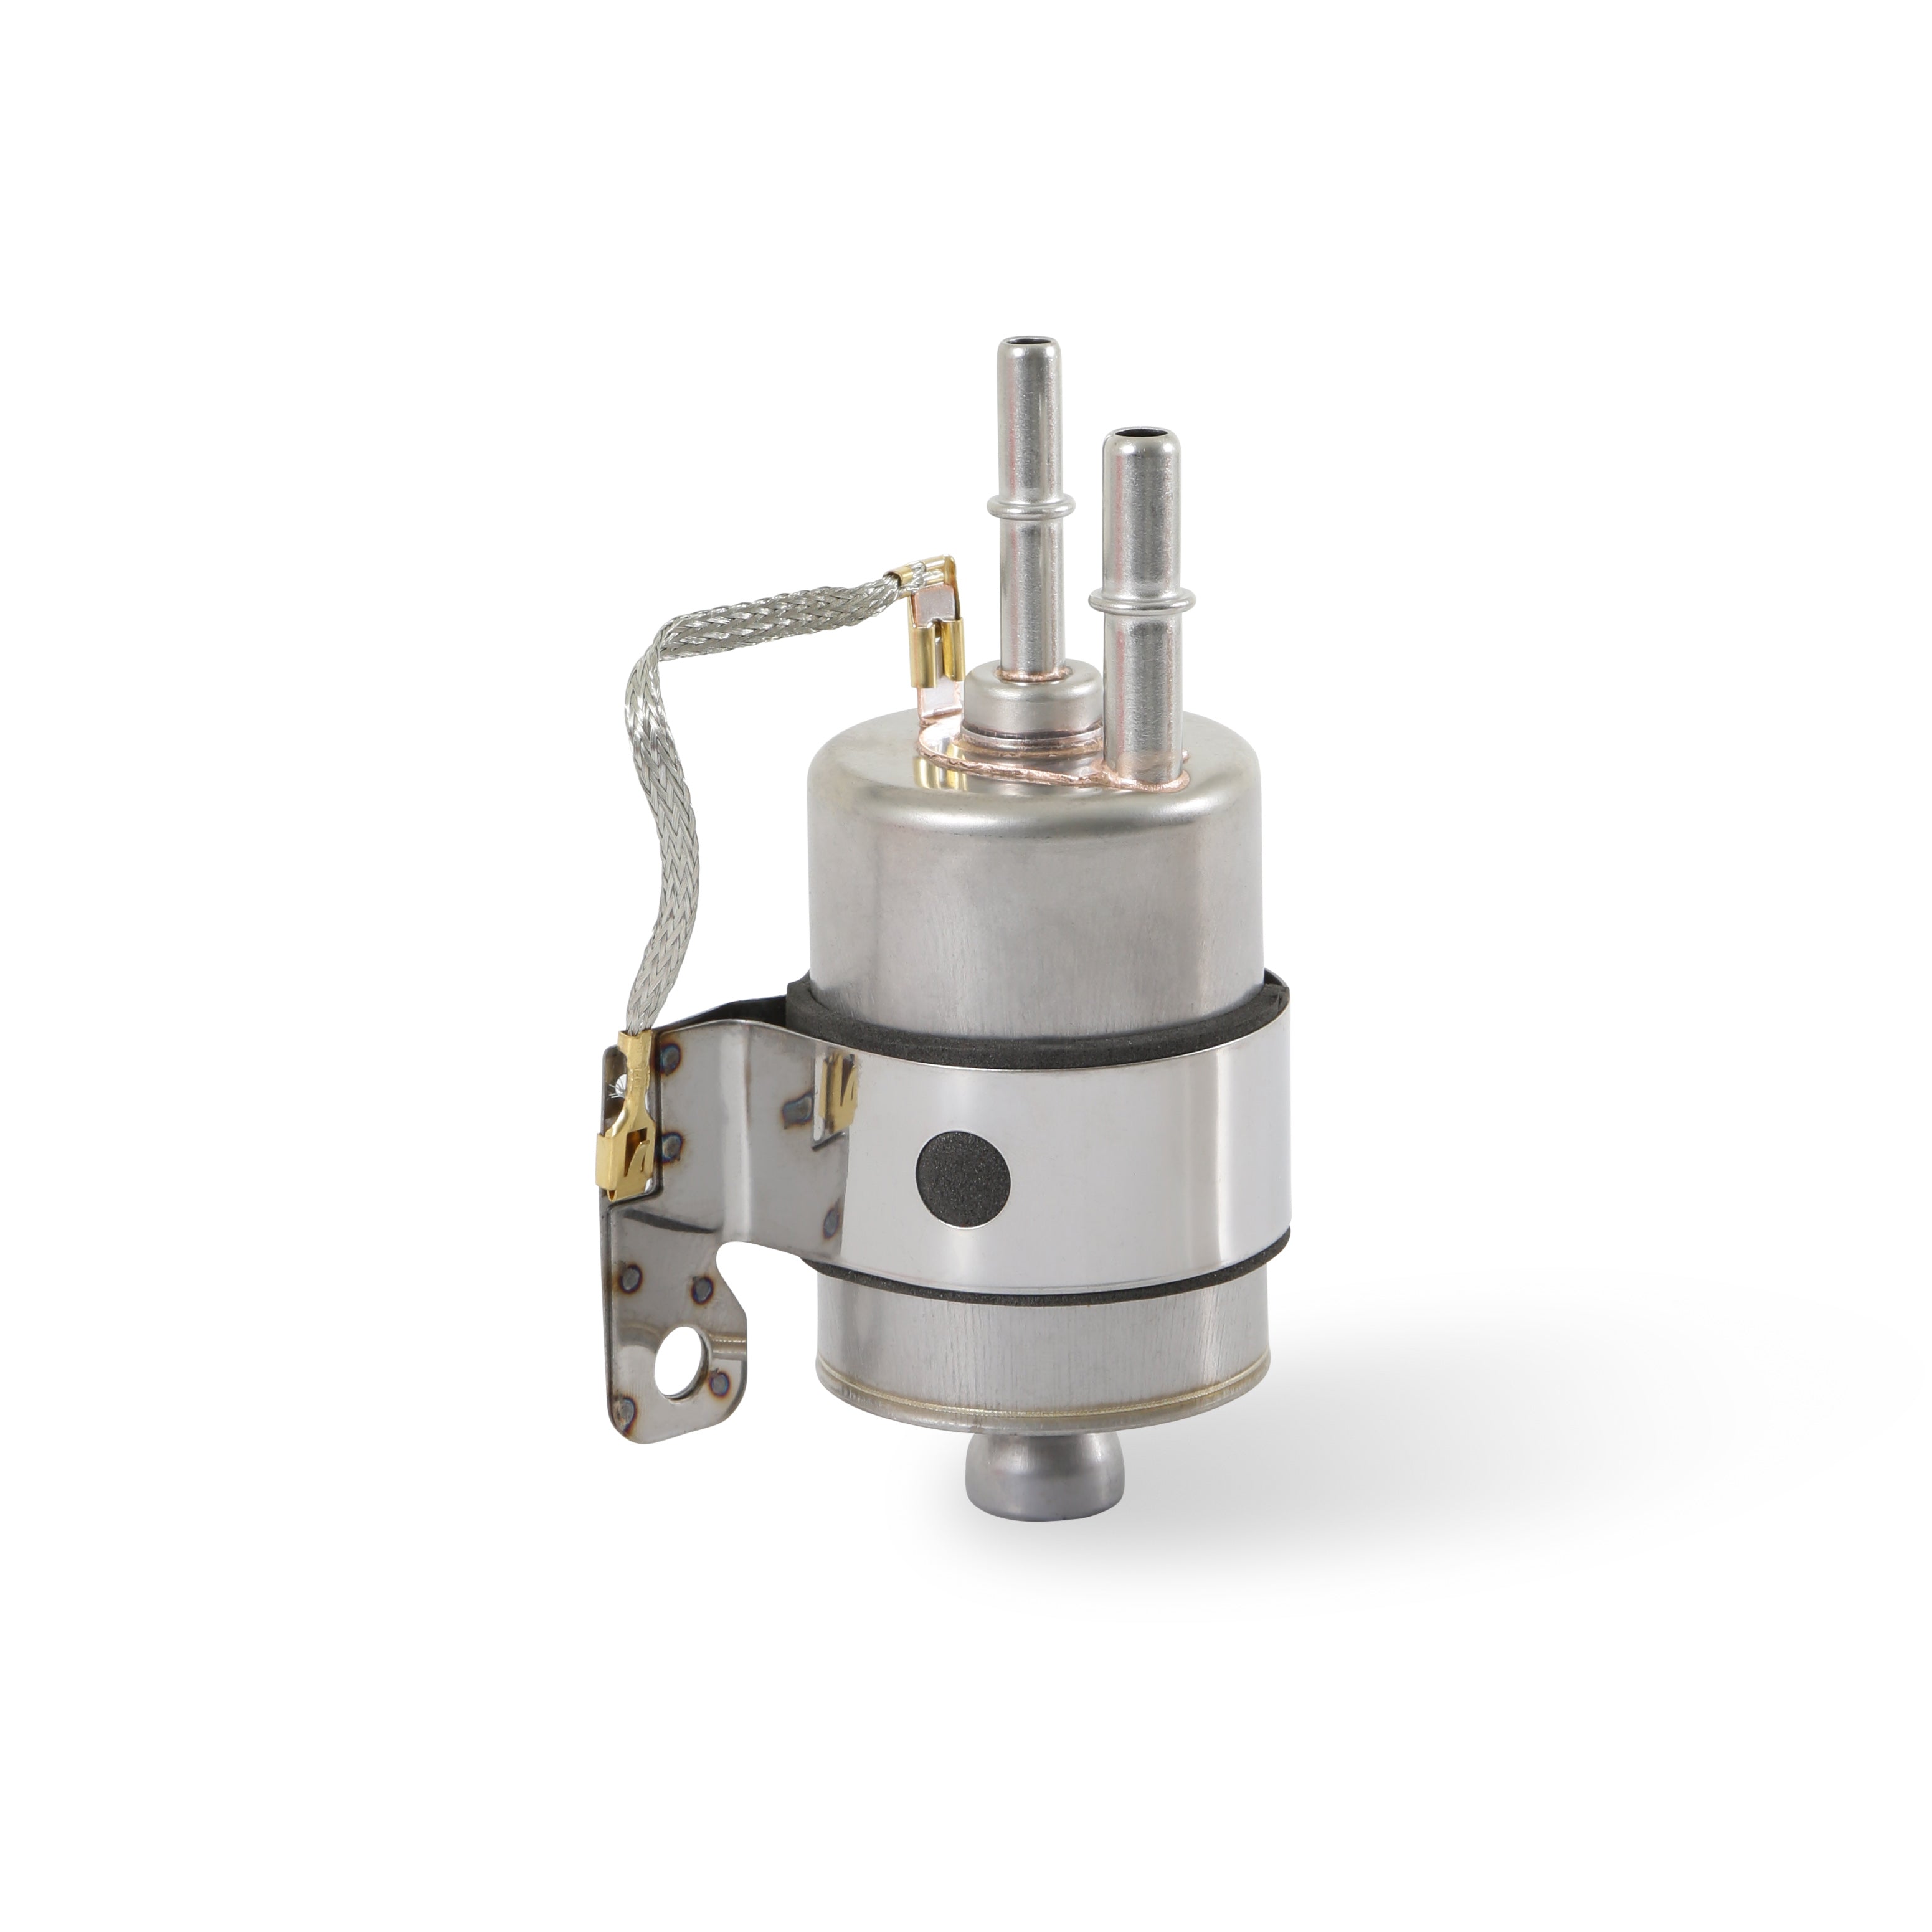 Holley EFI Fuel Injection Pressure Regulator 162-590